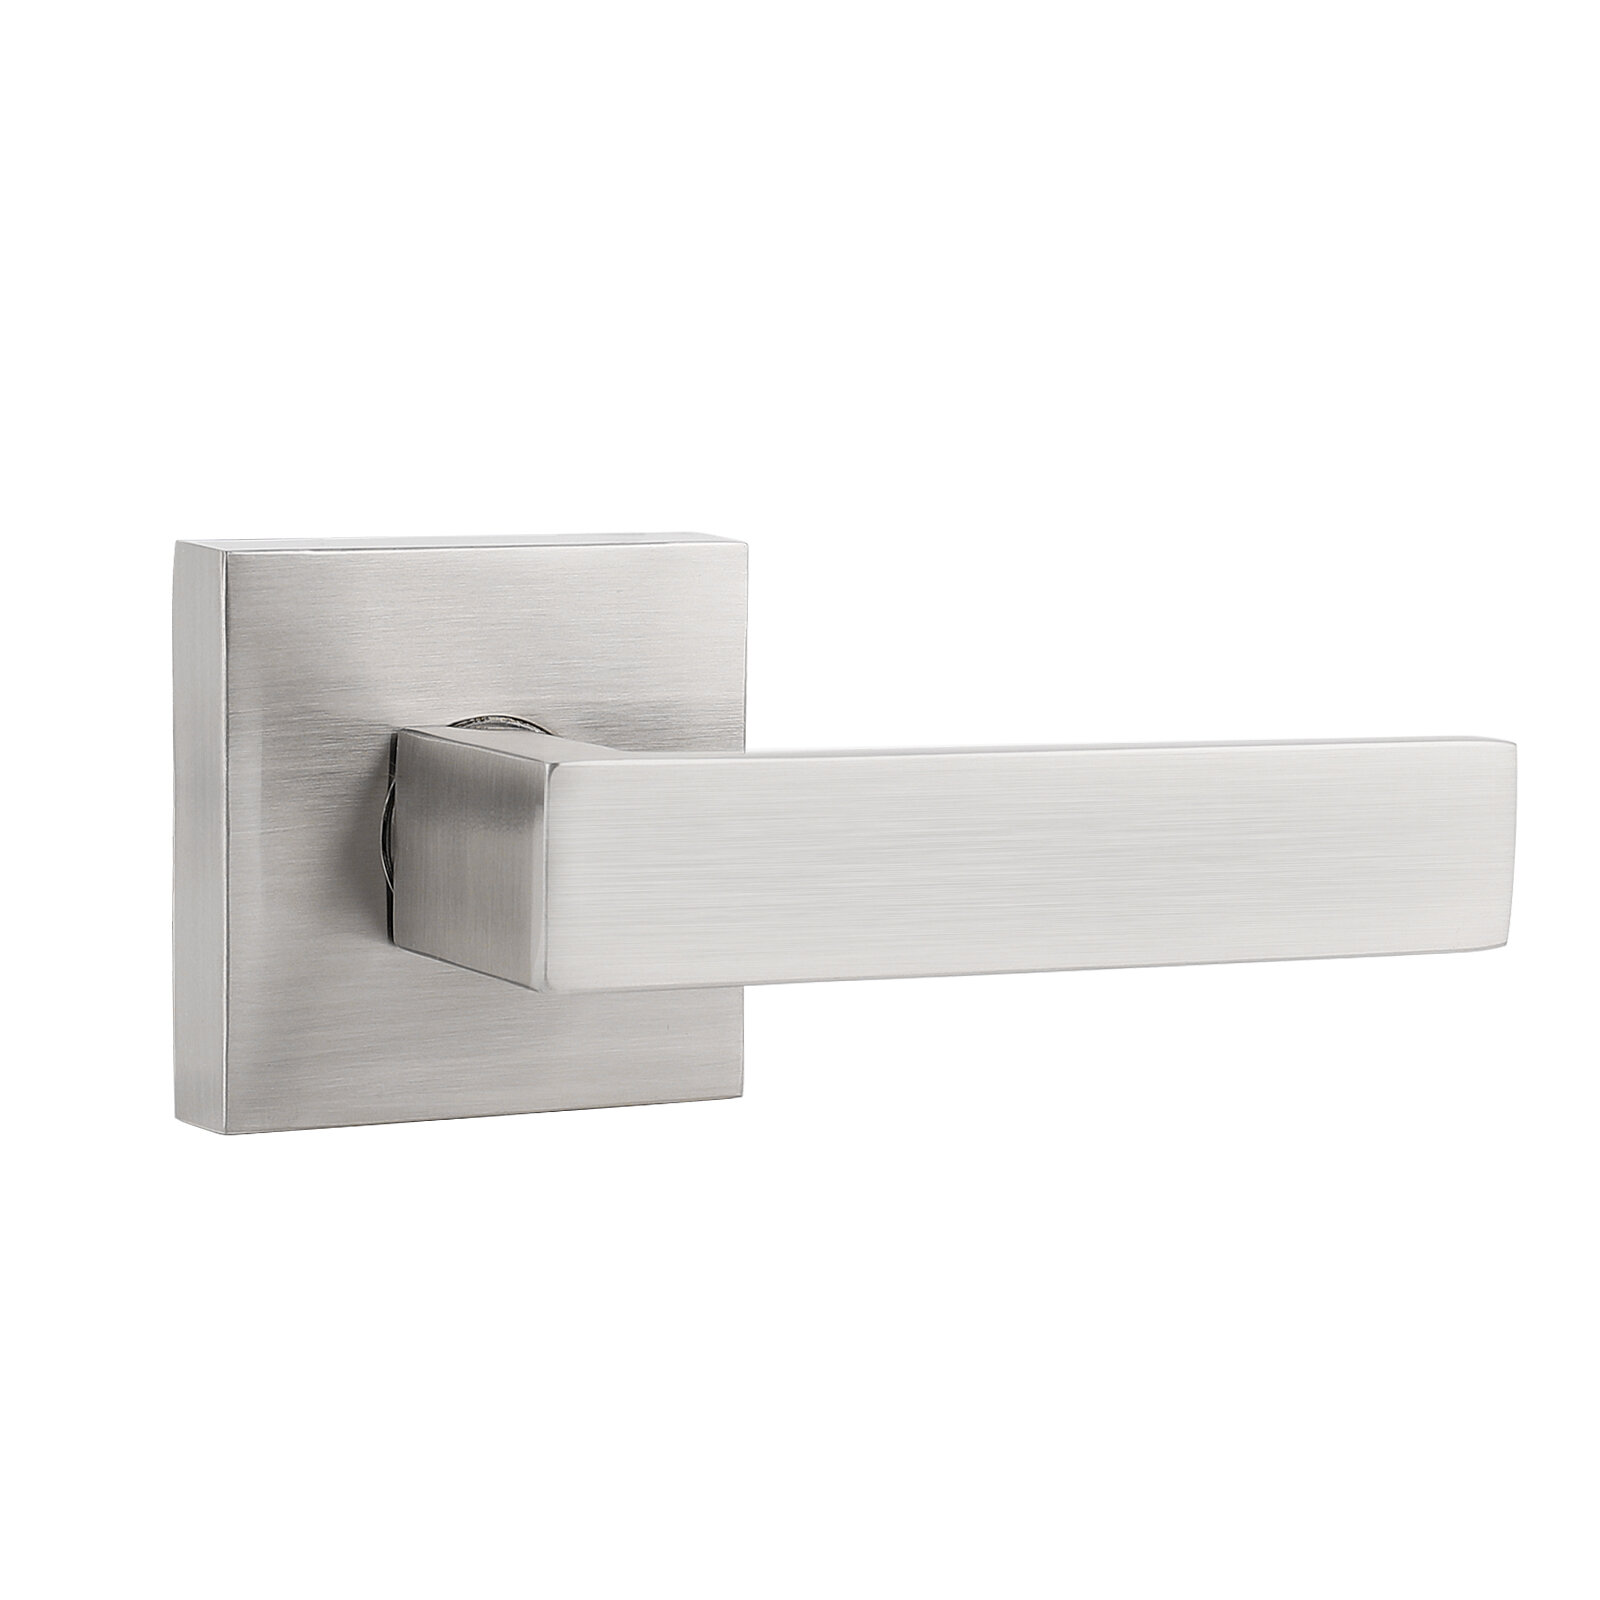 Lot of 10 Satin Nickel Door passage lever handle Locks closet hallway Brushed 